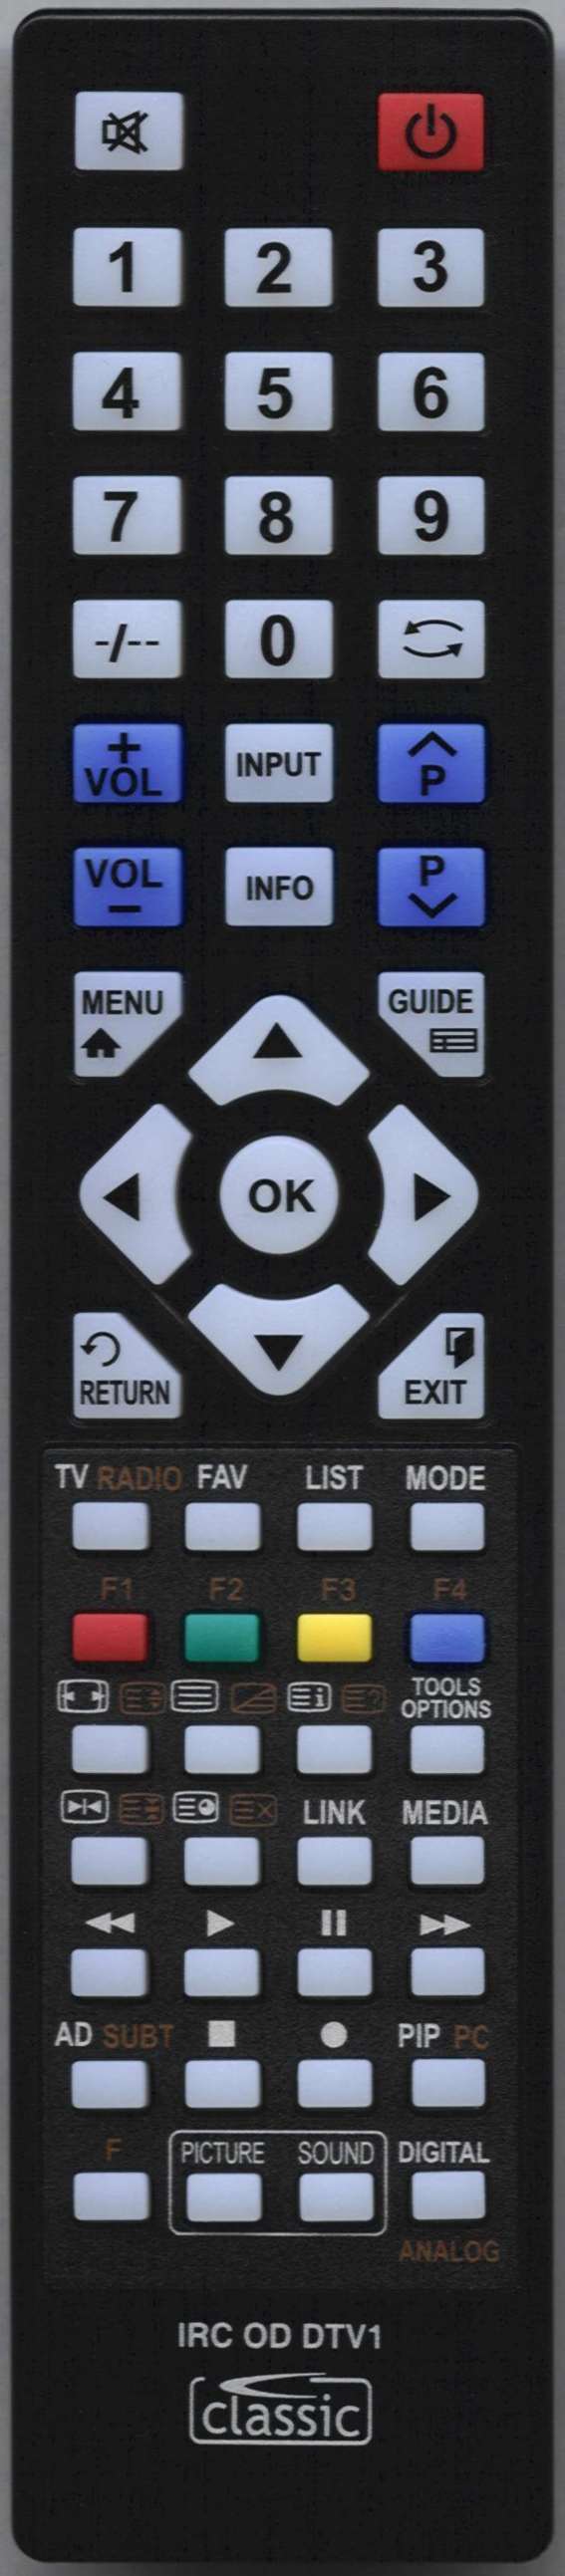 Beko 21 K40 Remote Control